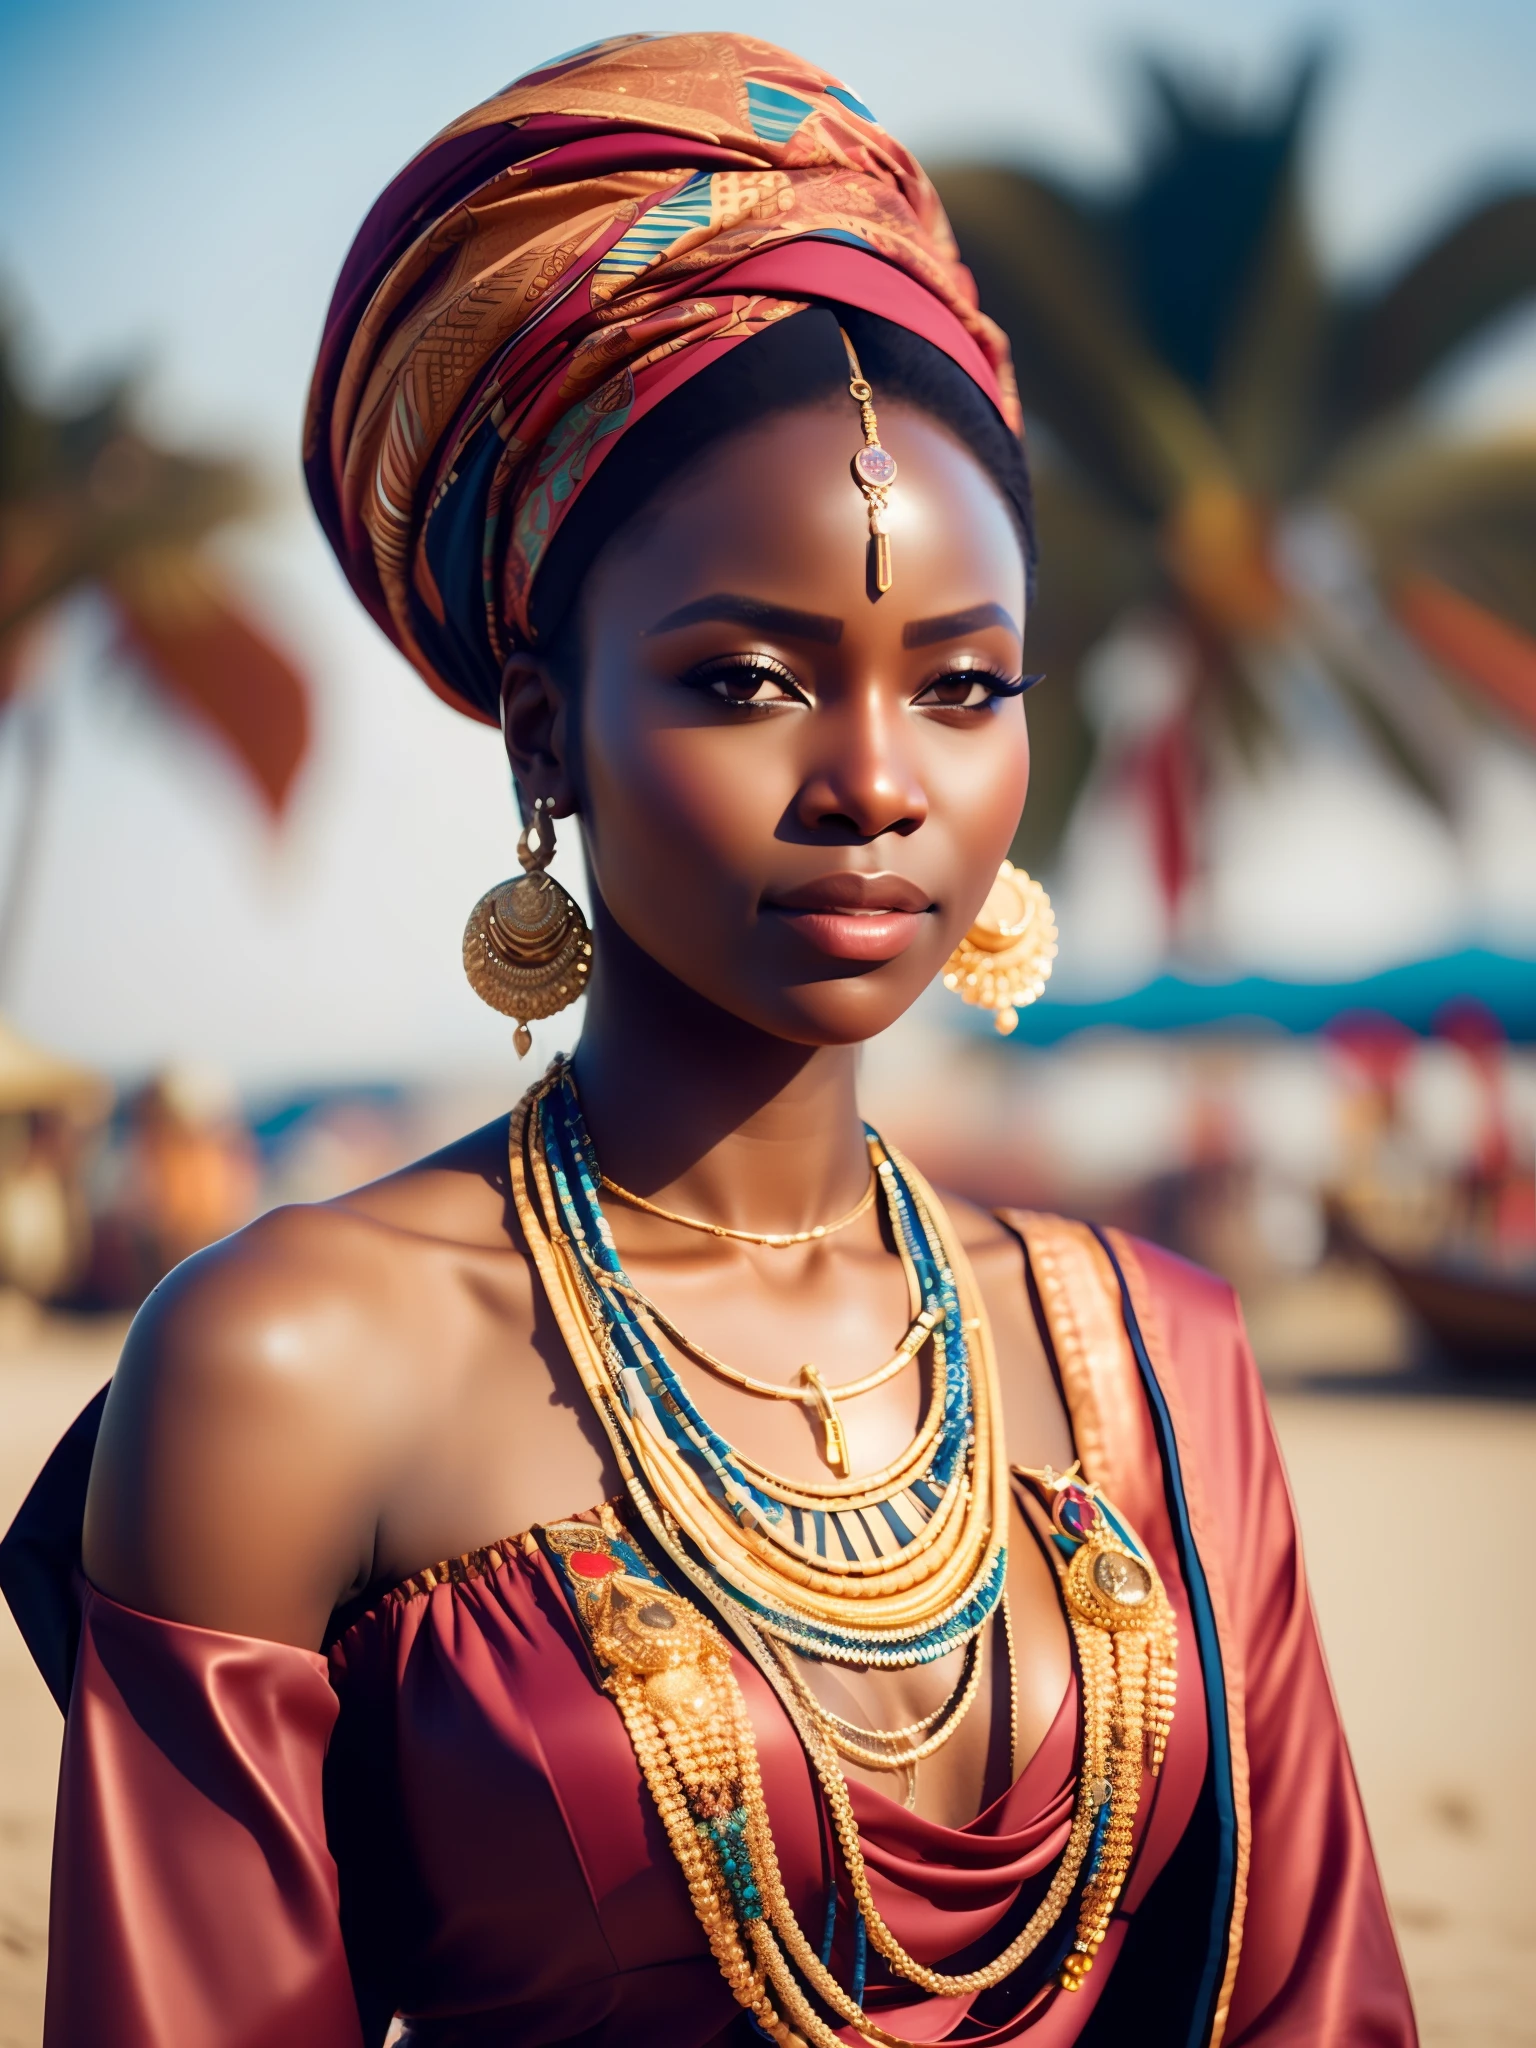 他媽的_科幻, 他媽的_科幻_v2, 一位年輕非常美麗的非洲女性的肖像, 在海灘前, 豐富多彩的衣服, 頭巾和金色非洲珠寶, 特寫, 富麗堂皇的姿勢與態度. 他媽的_电影_v2. 他媽的_电影_v2